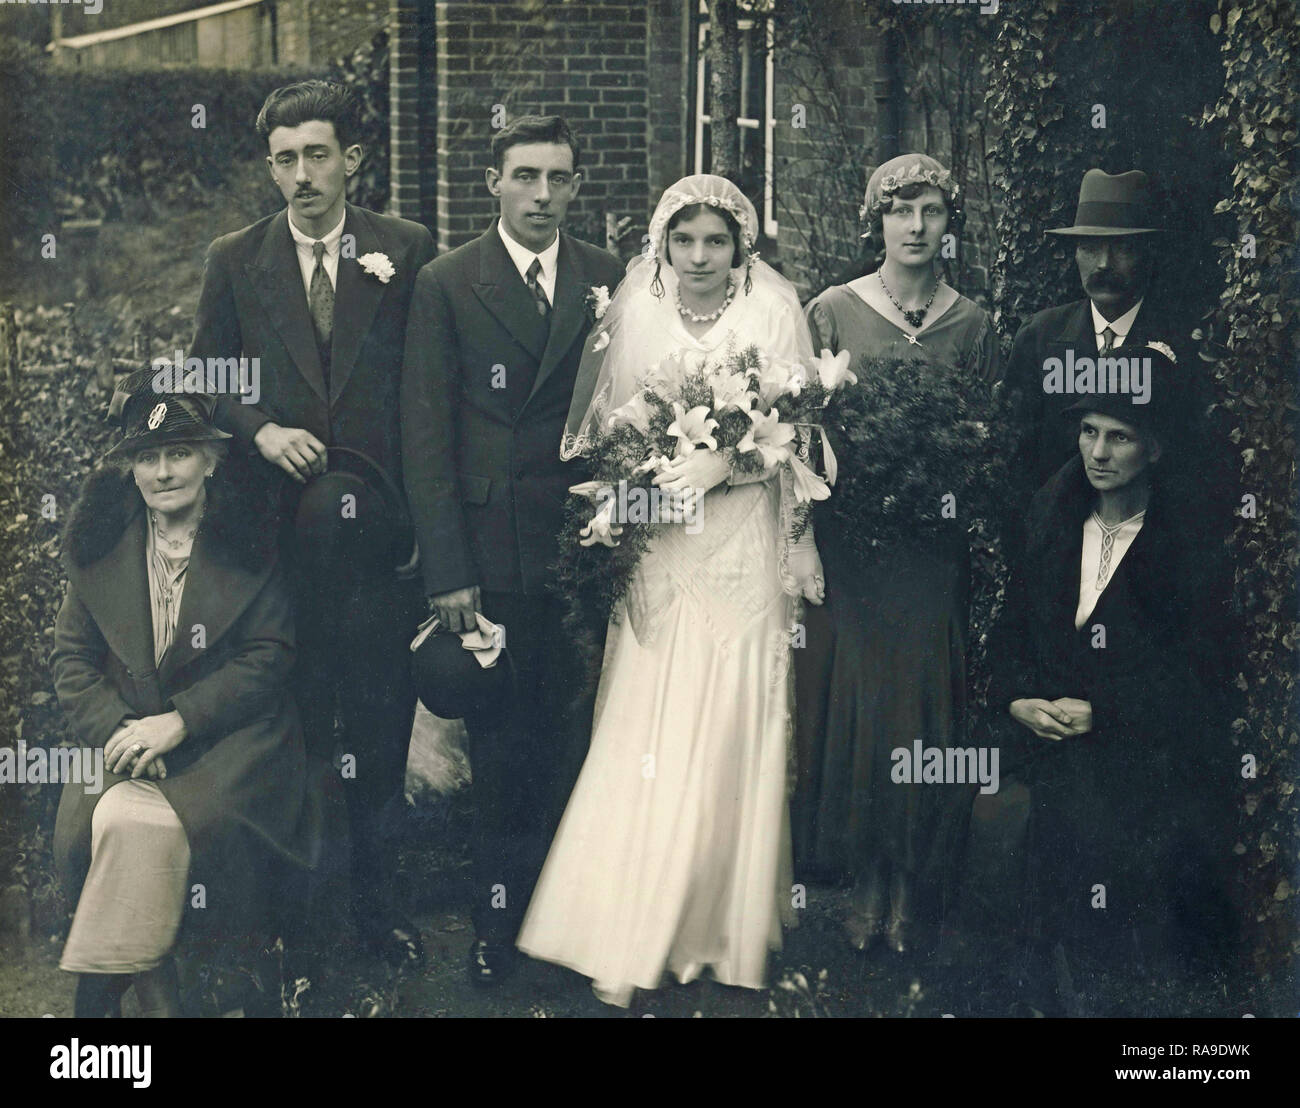 Historisches Archiv Bild der Hochzeit, c 1930 s Stockfoto